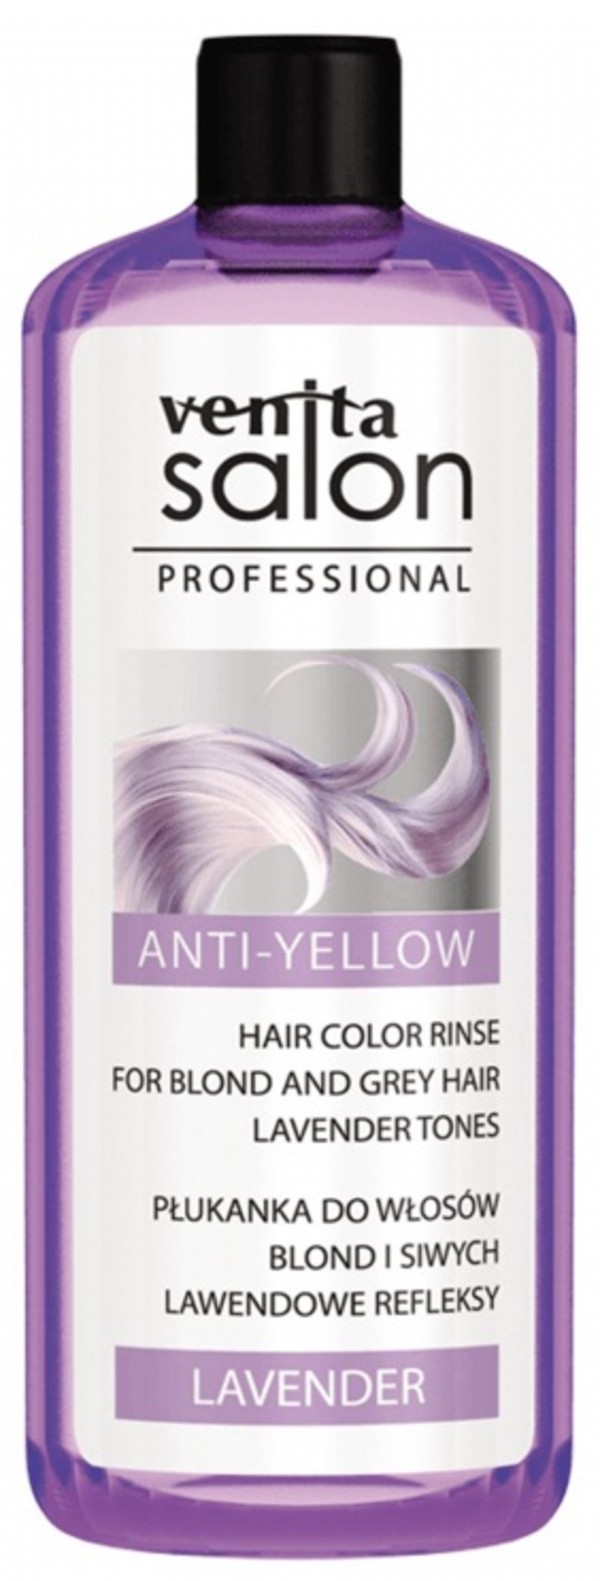 Salon Professional Płukanka do włosów Lavender